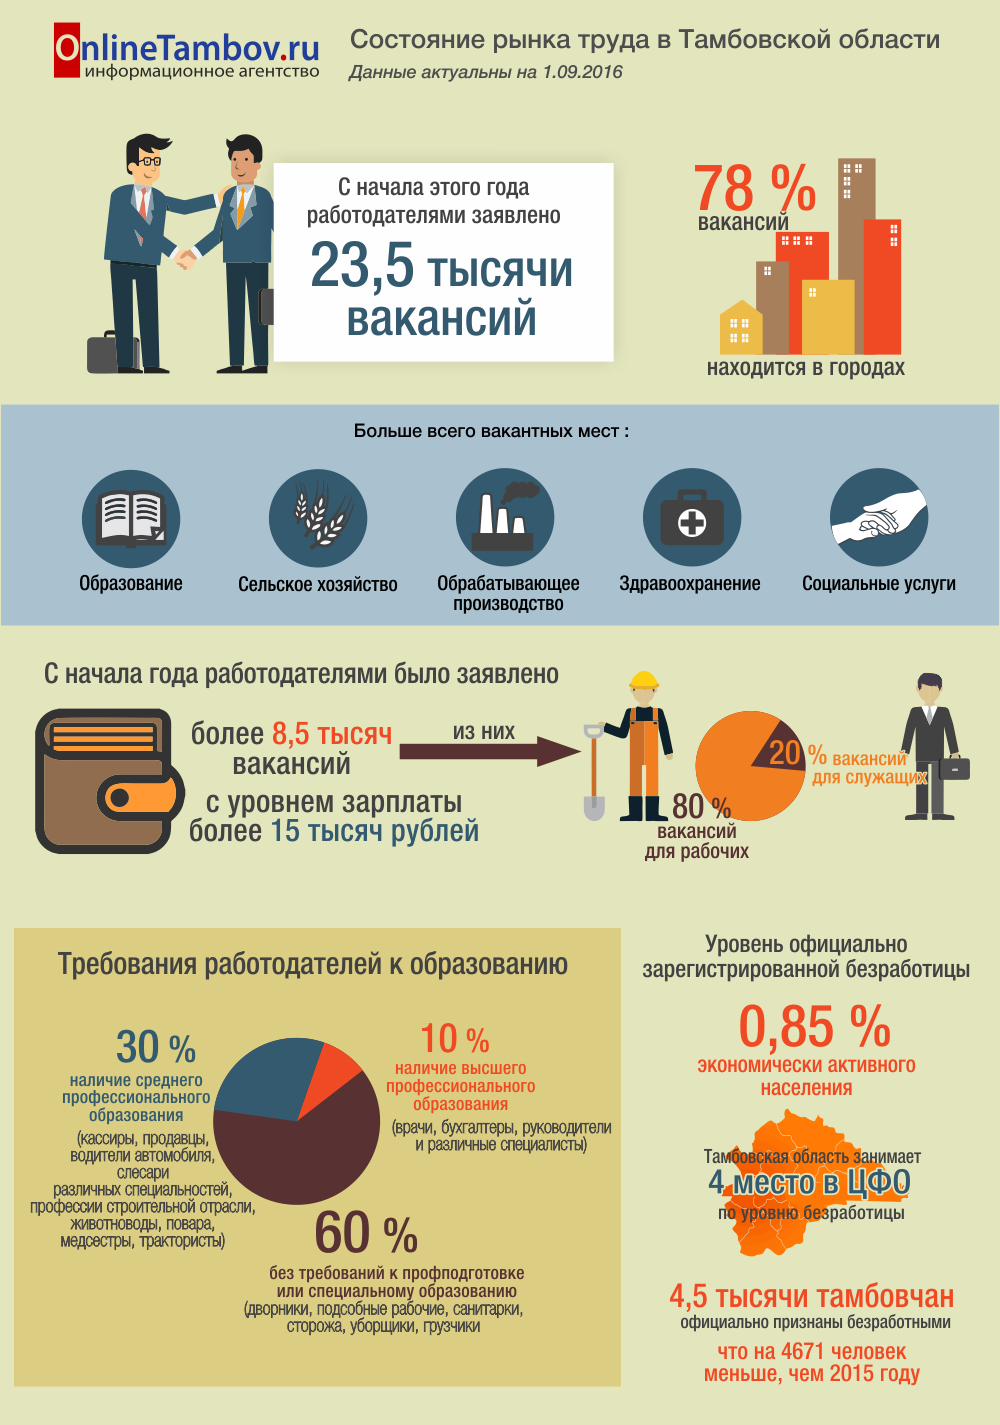 Состояние рынка труда в Тамбовской области на 1 сентября 2016 г.